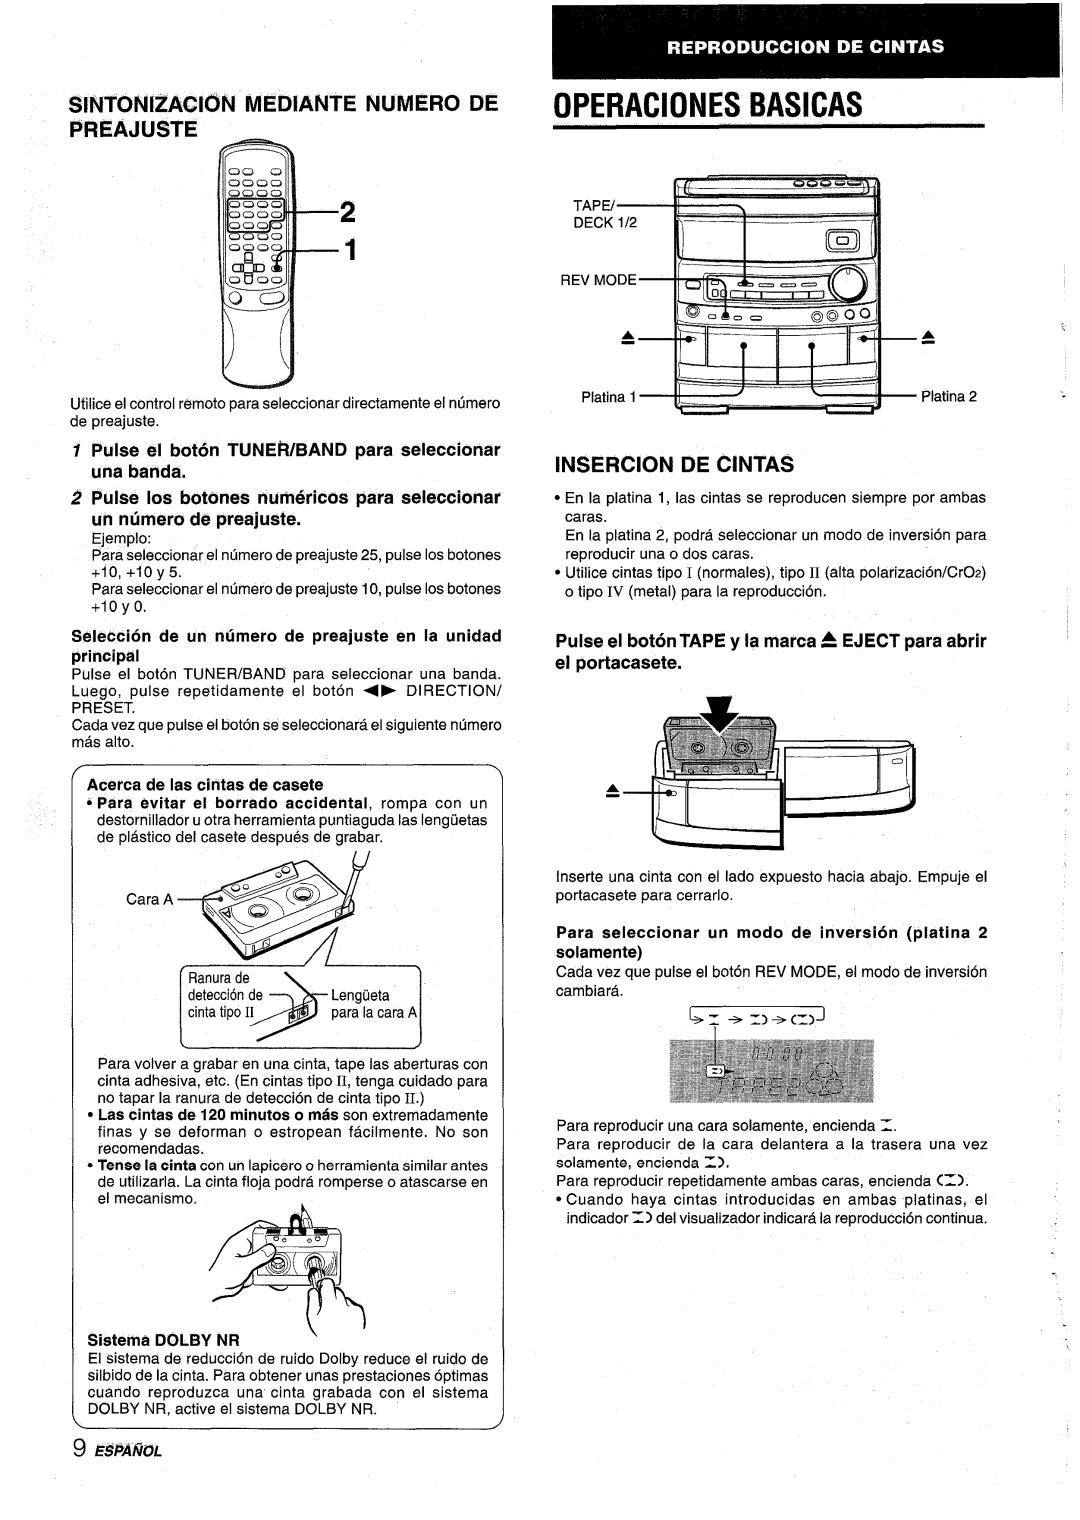 Aiwa NSX-AV800 manual OPERAClONES BASICAS, Sintonizacion Mediante Numero De Preajuste, Insercion De Cintas, Sistema DOLB 